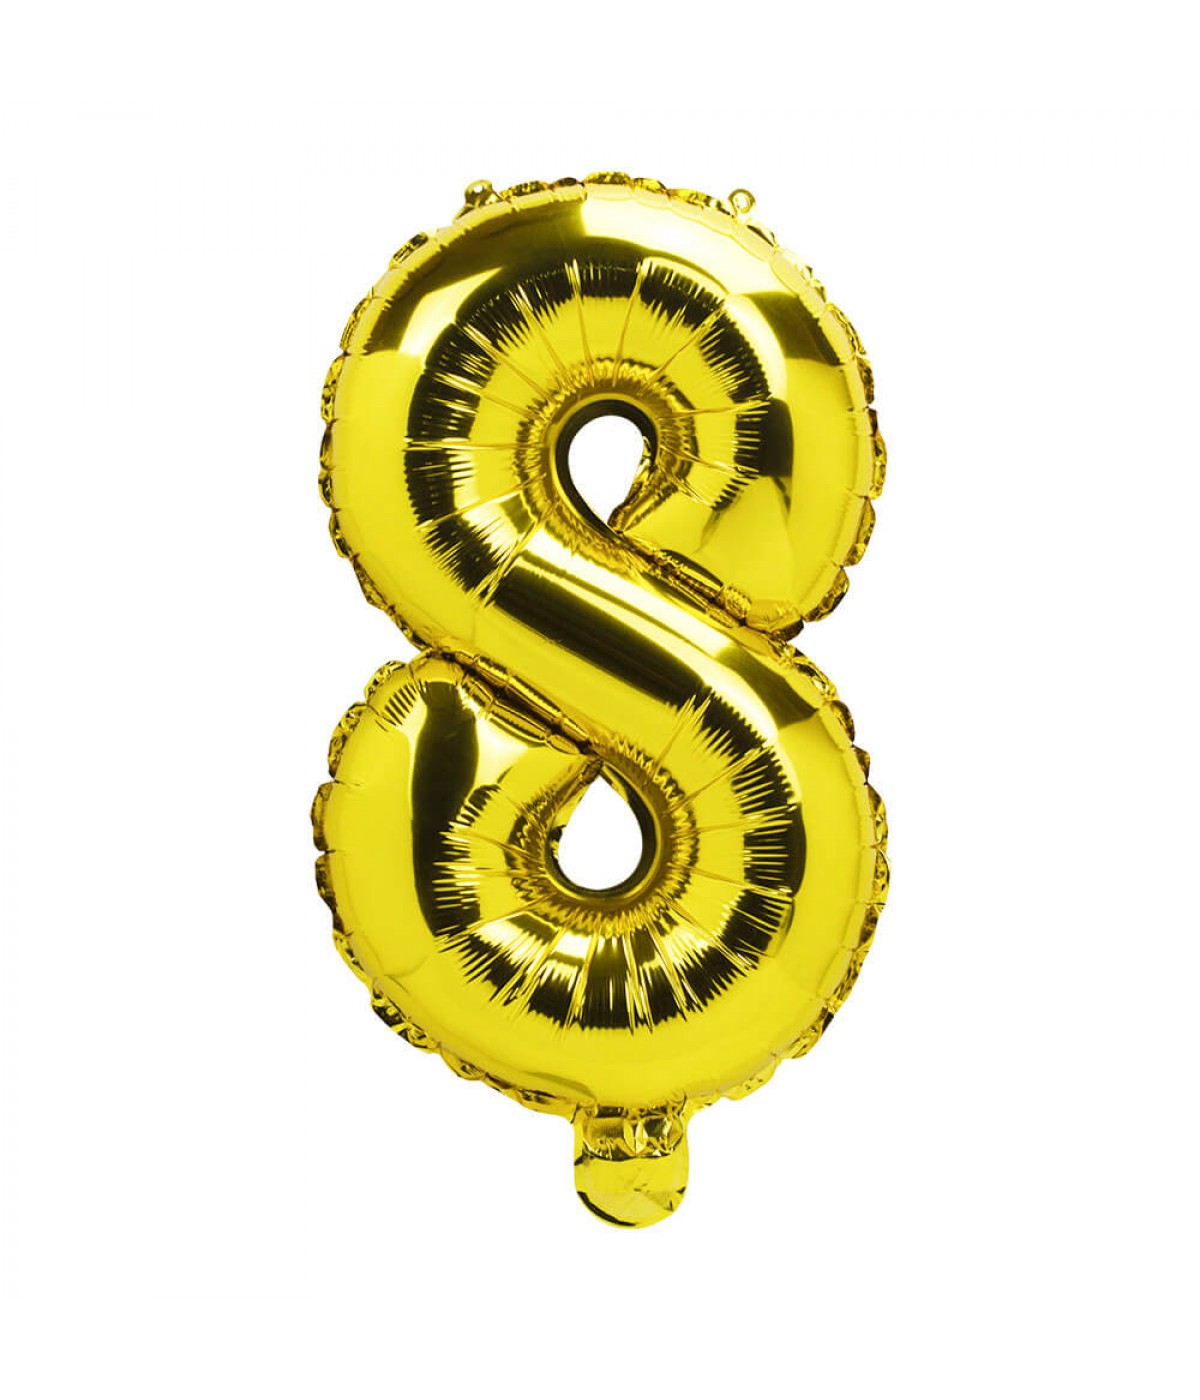 Balão Número Pequeno Ouro - 35cm - Partyval